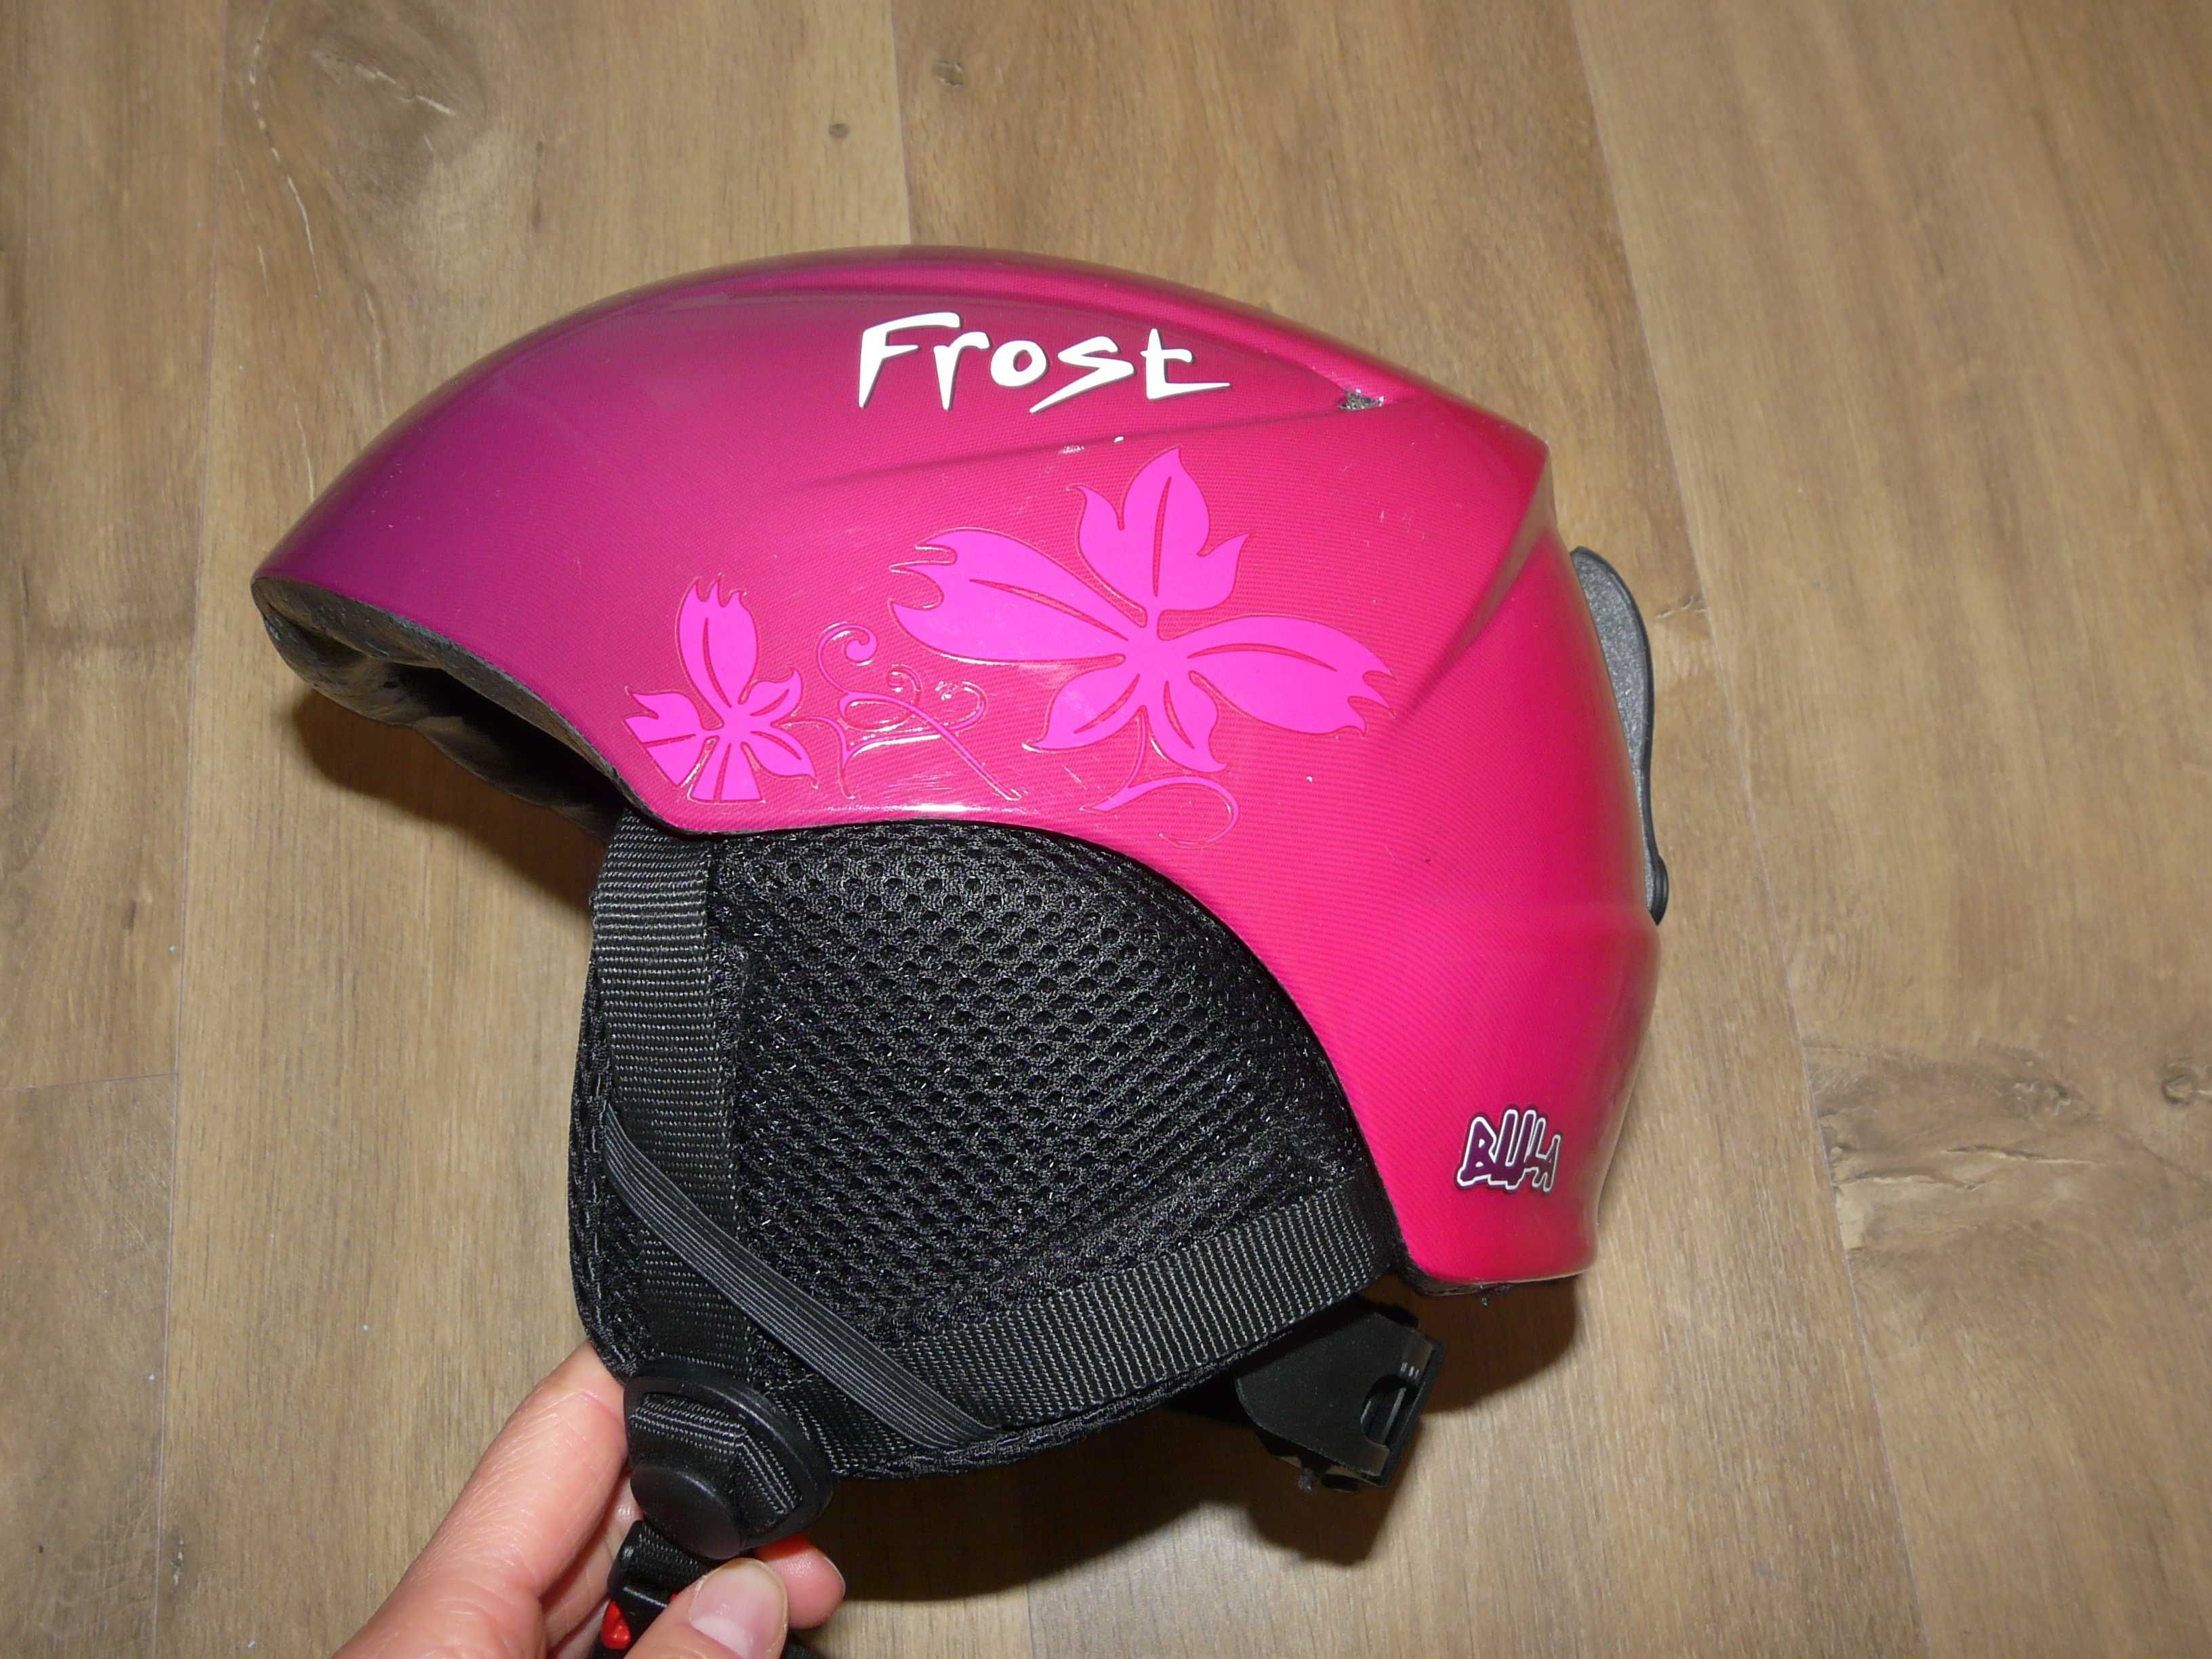 Kask narciarski snowboardowy Bula Frost nauszniki roz. S/52cm 310-345g